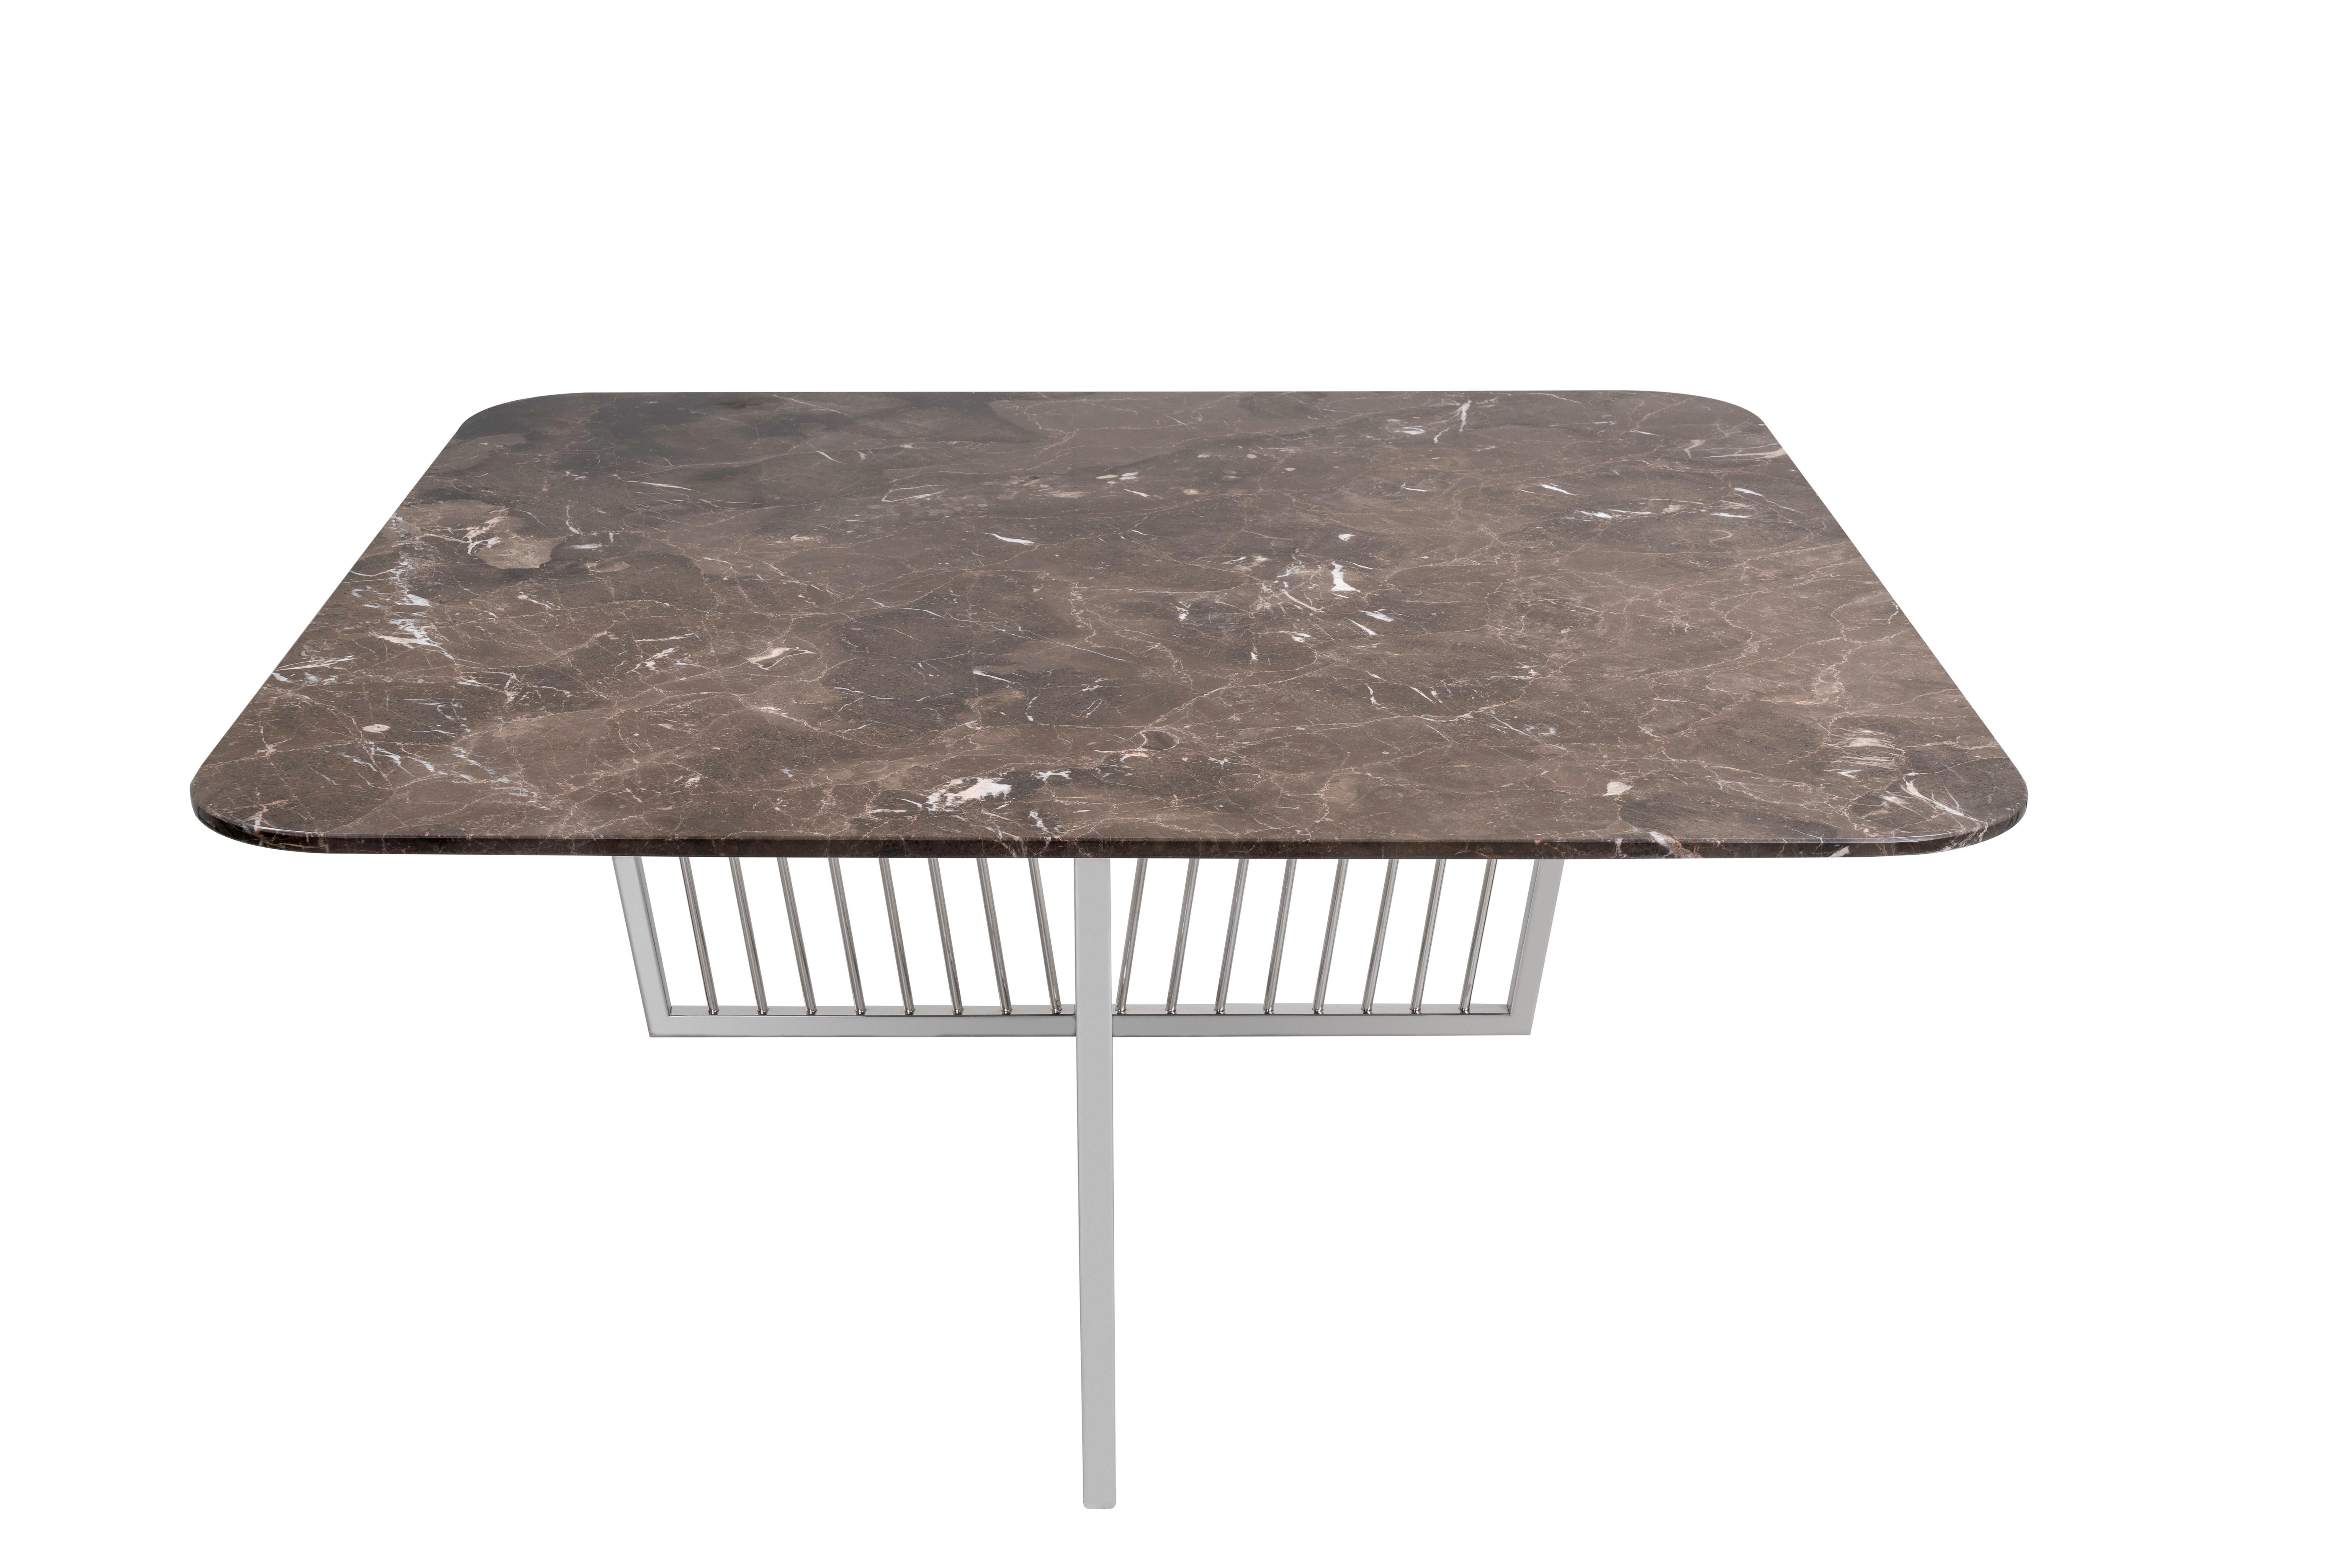 Sehr elegant und widerstandsfähig, mit Sockel aus poliertem Edelstahl und Platte aus Marron-Emperador-Marmor. Dieser Tisch passt zu jeder modernen Wohnzimmereinrichtung und verbindet die Raffinesse des Natursteins mit dem Metallgestell.

 
 
    